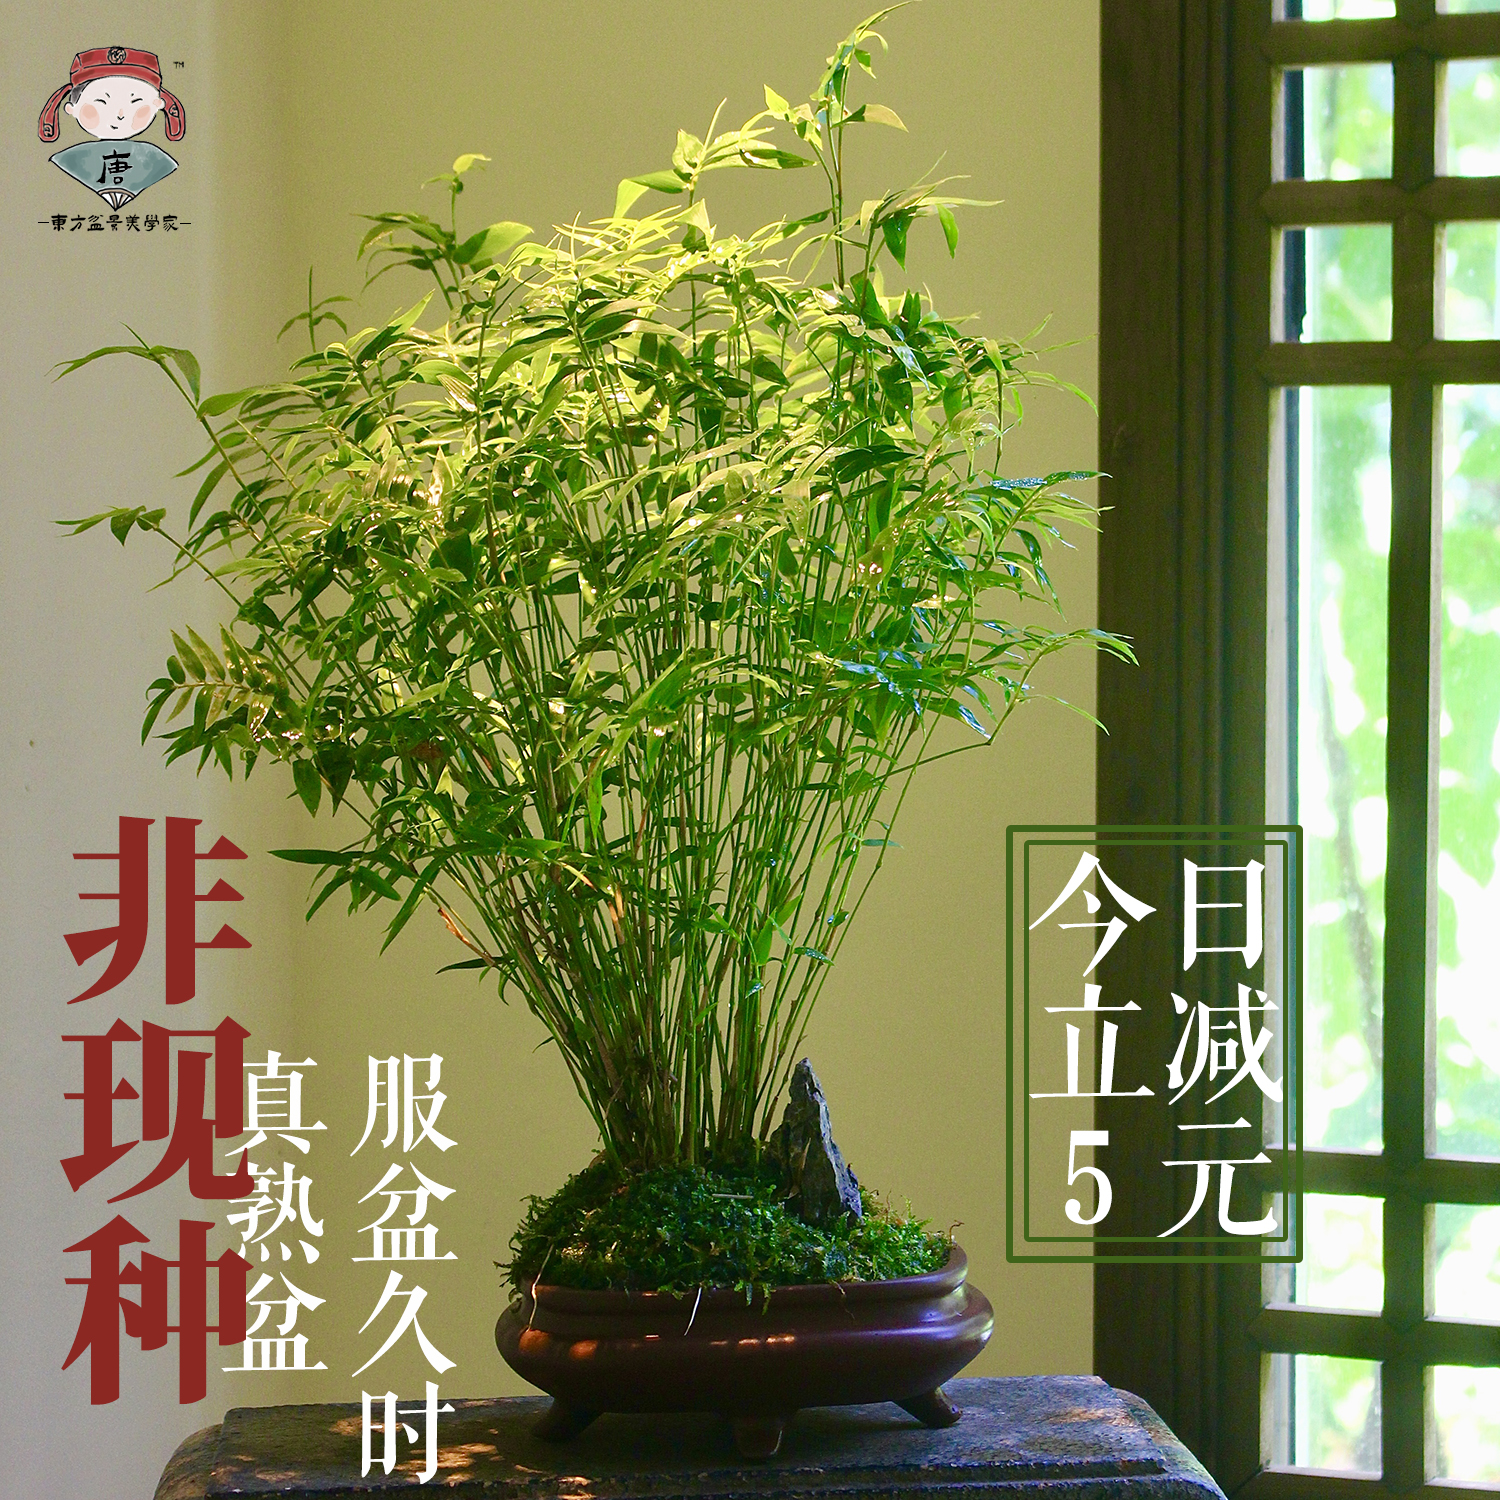 米竹盆栽耐阴植物小型竹子室内水养观赏竹组盆造型盆景凤尾竹绿植